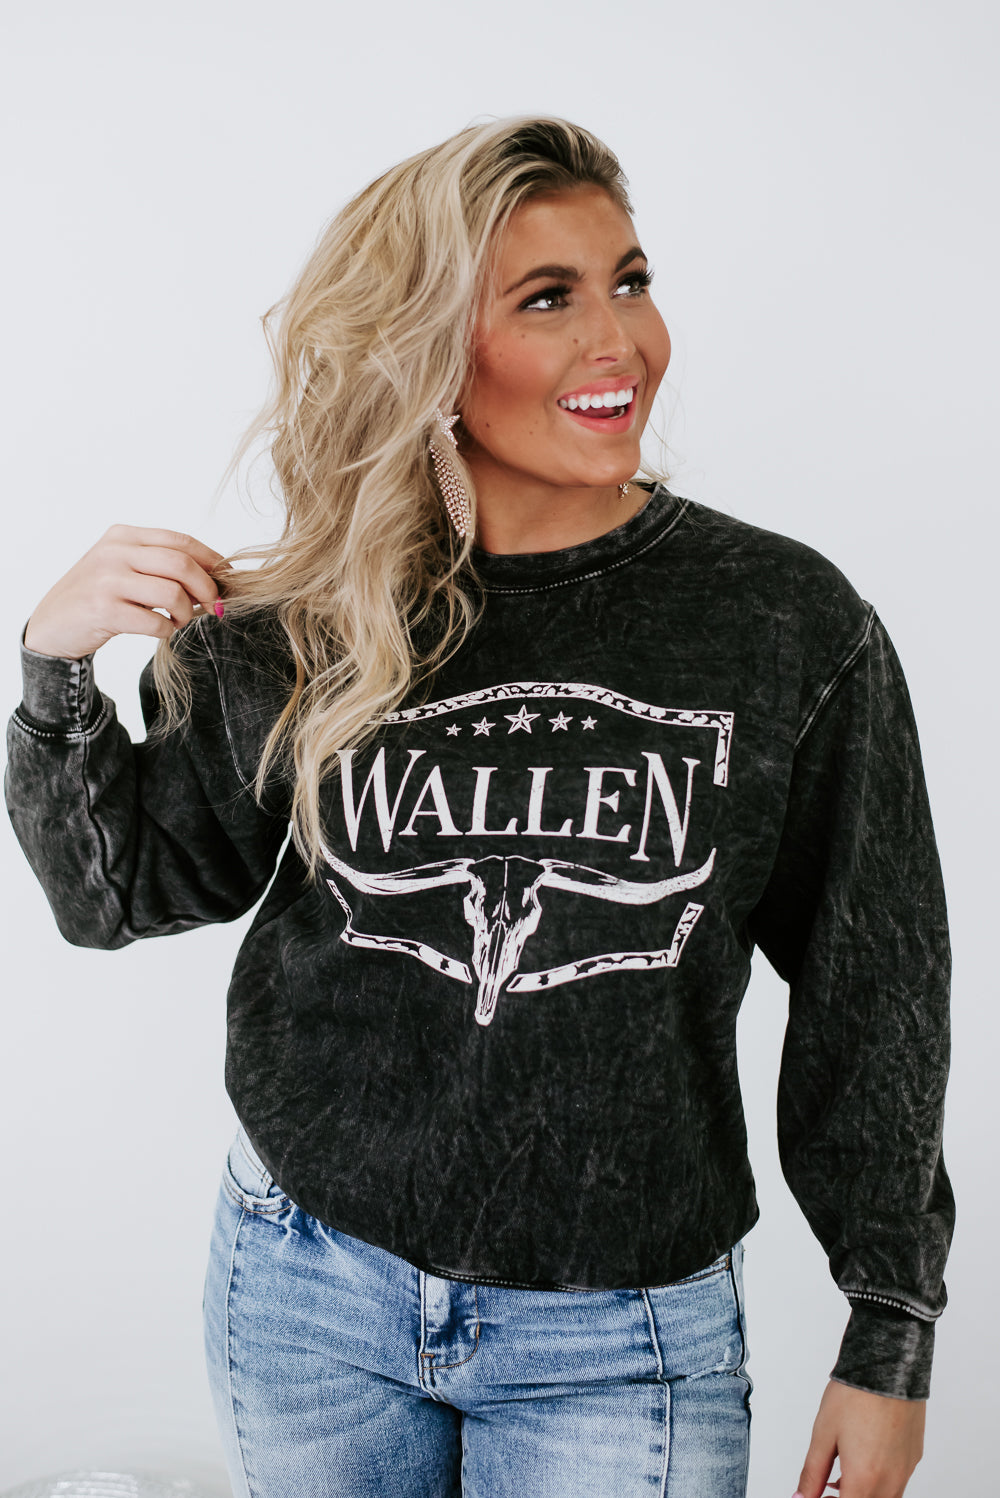 Wallen Crewneck Sweatshirt, Black